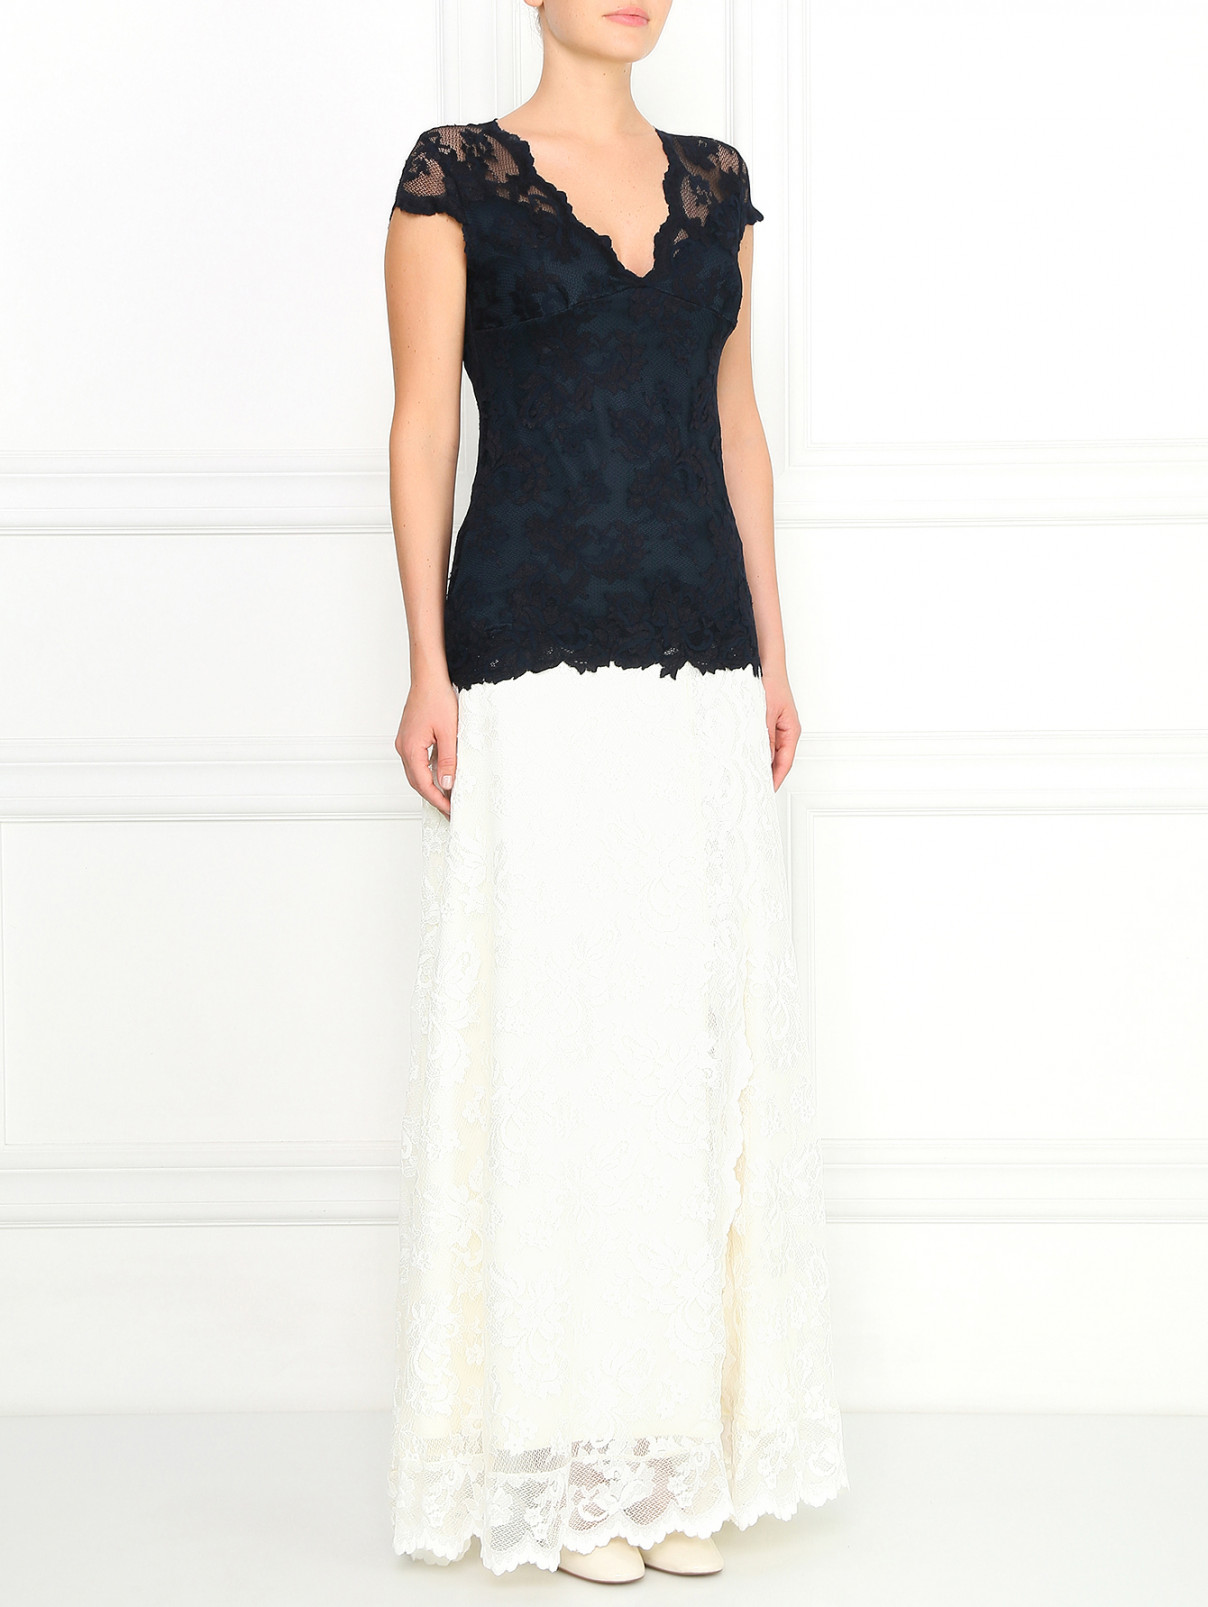 Кружевная юбка-макси с разрезом Olvi's  –  Модель Общий вид  – Цвет:  Белый